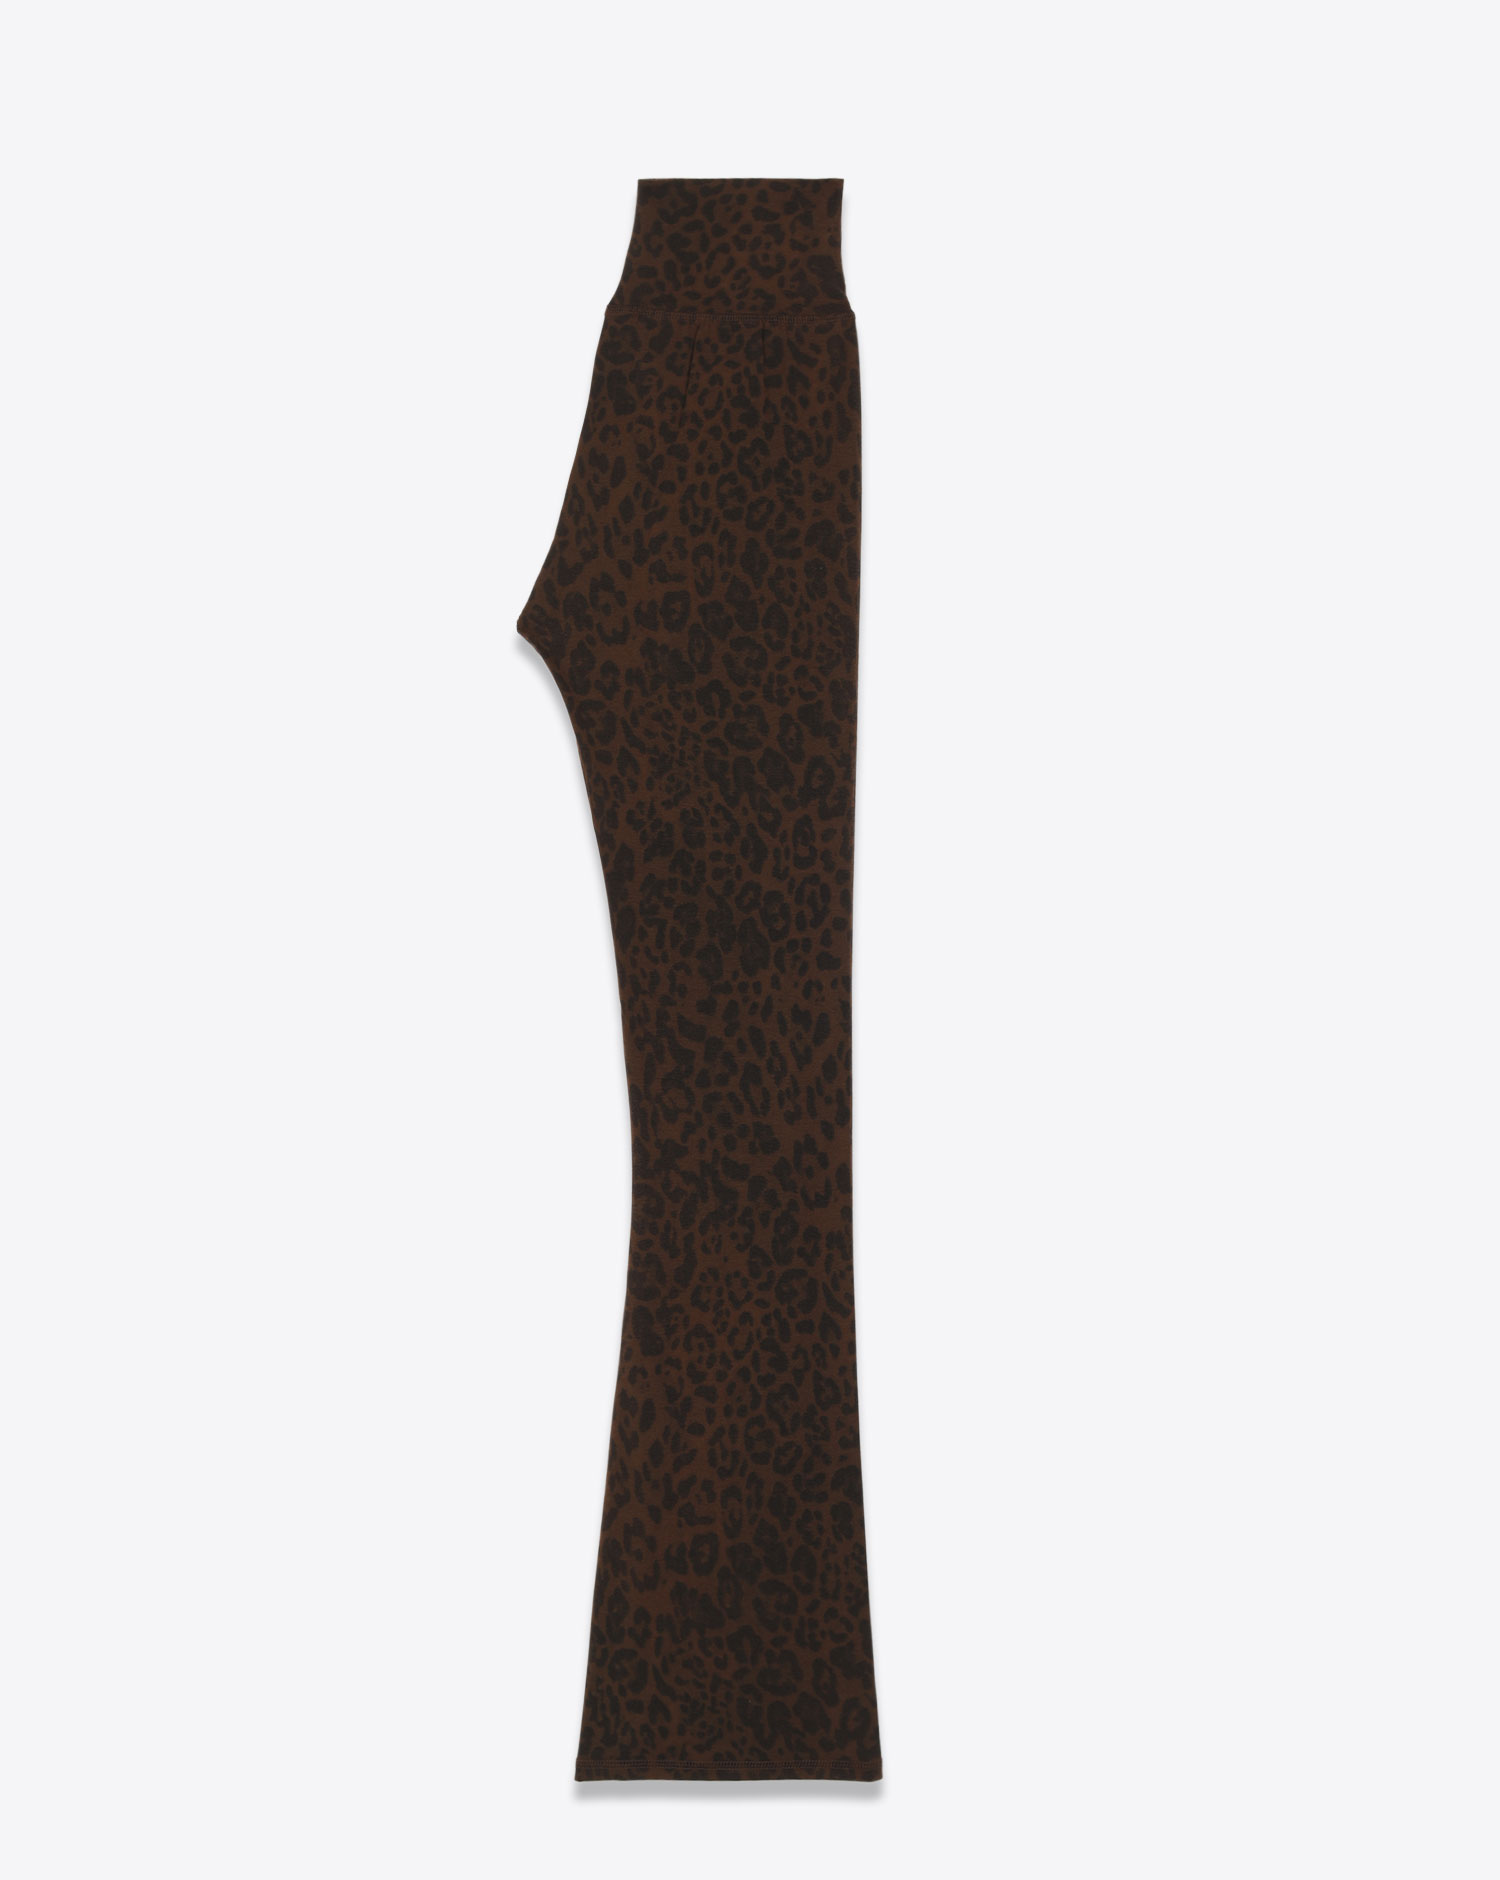 Legging Long Flare Ragdoll LA imprimé léopard marron foncé.
